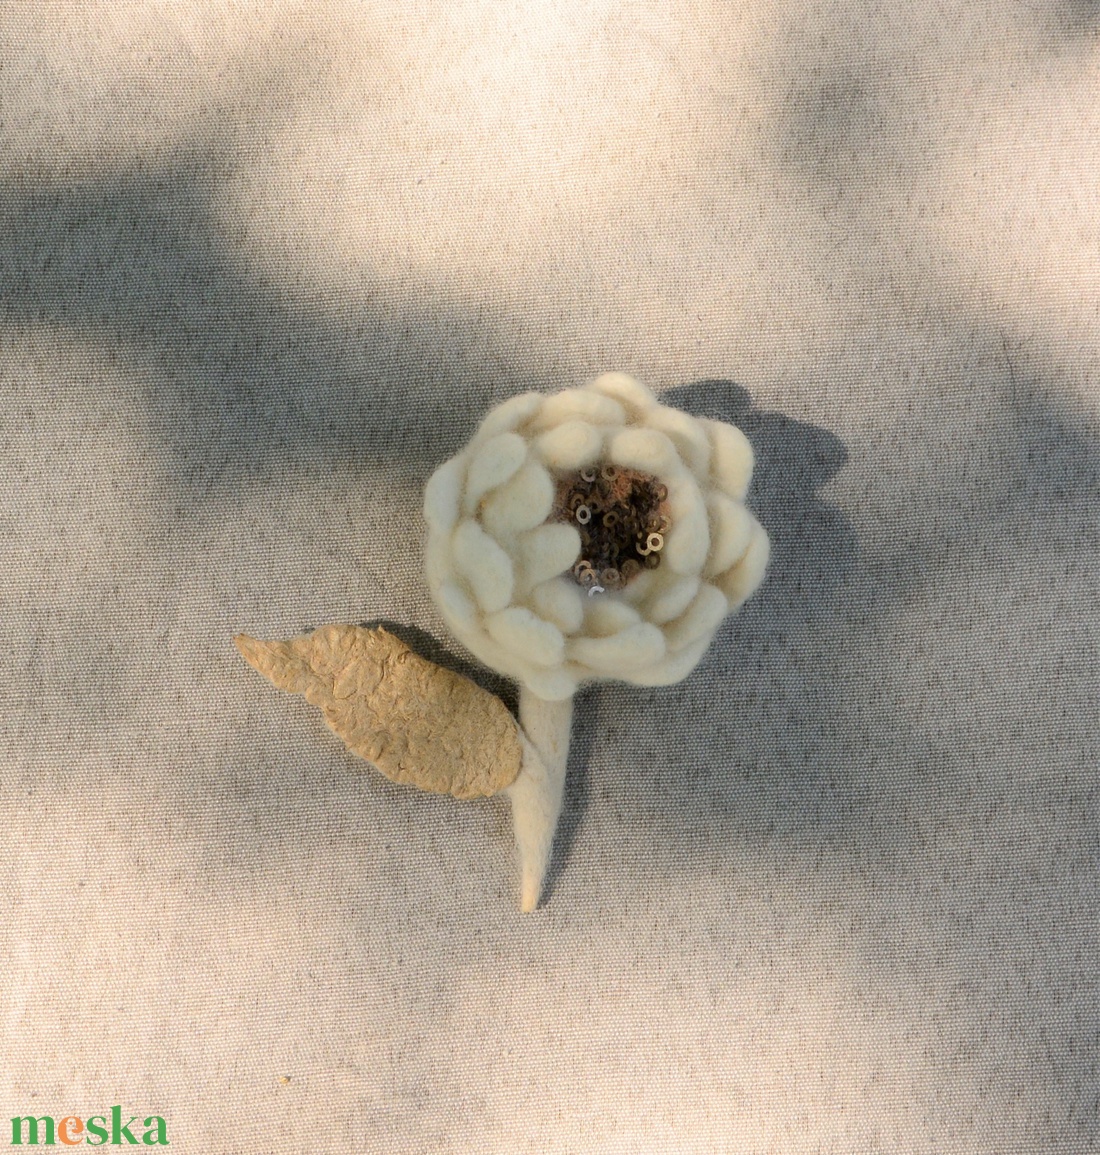 Fehér selyem nemez virágos kitűző, különleges, egyedi bross - ékszer - kitűző és bross - kitűző - Meska.hu